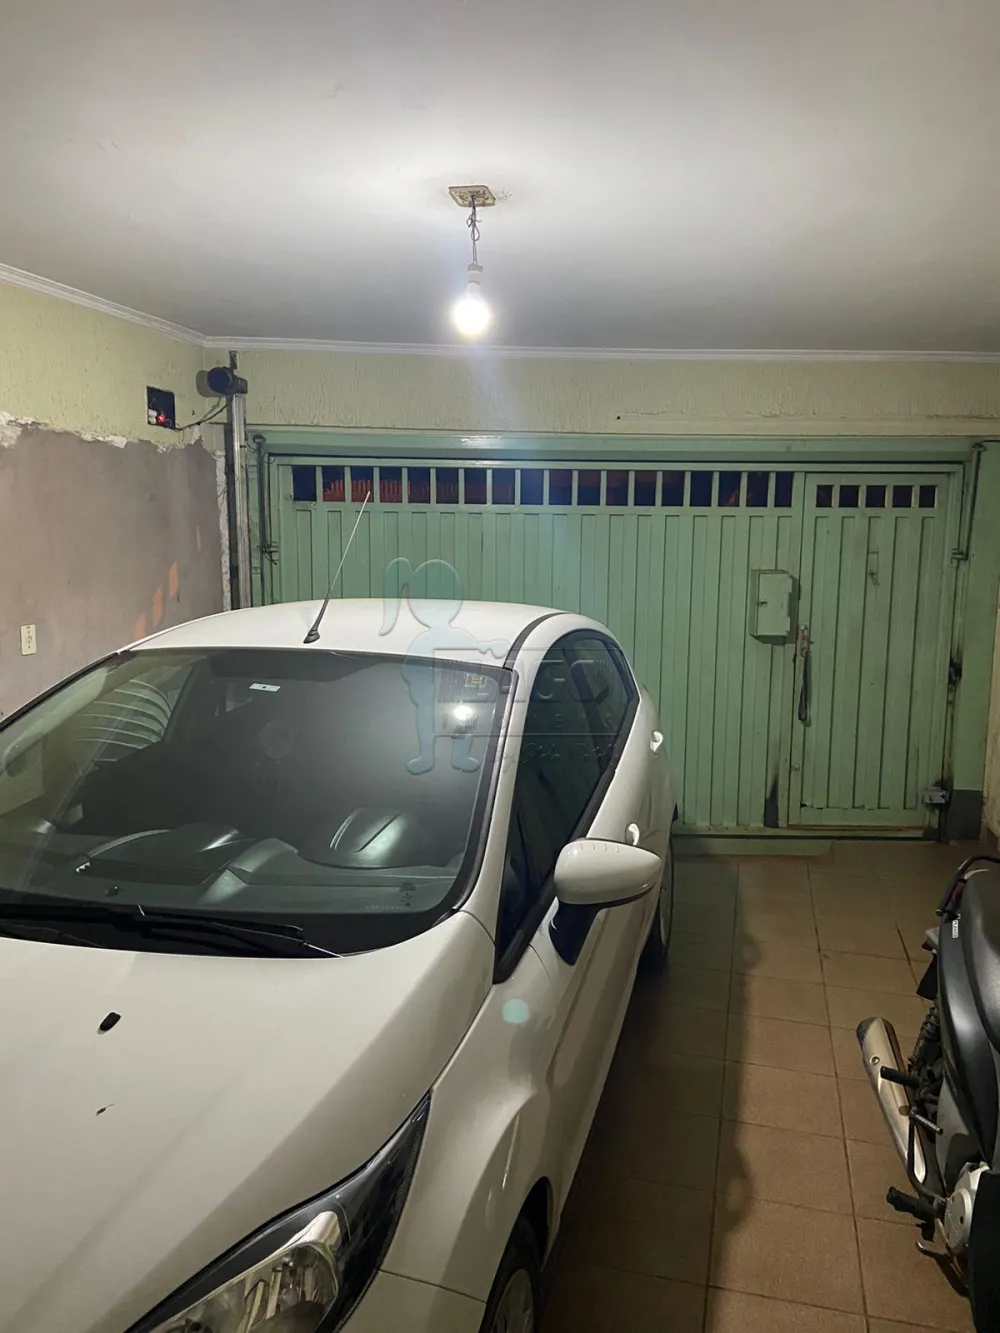 Comprar Casa / Padrão em Ribeirão Preto R$ 265.000,00 - Foto 2